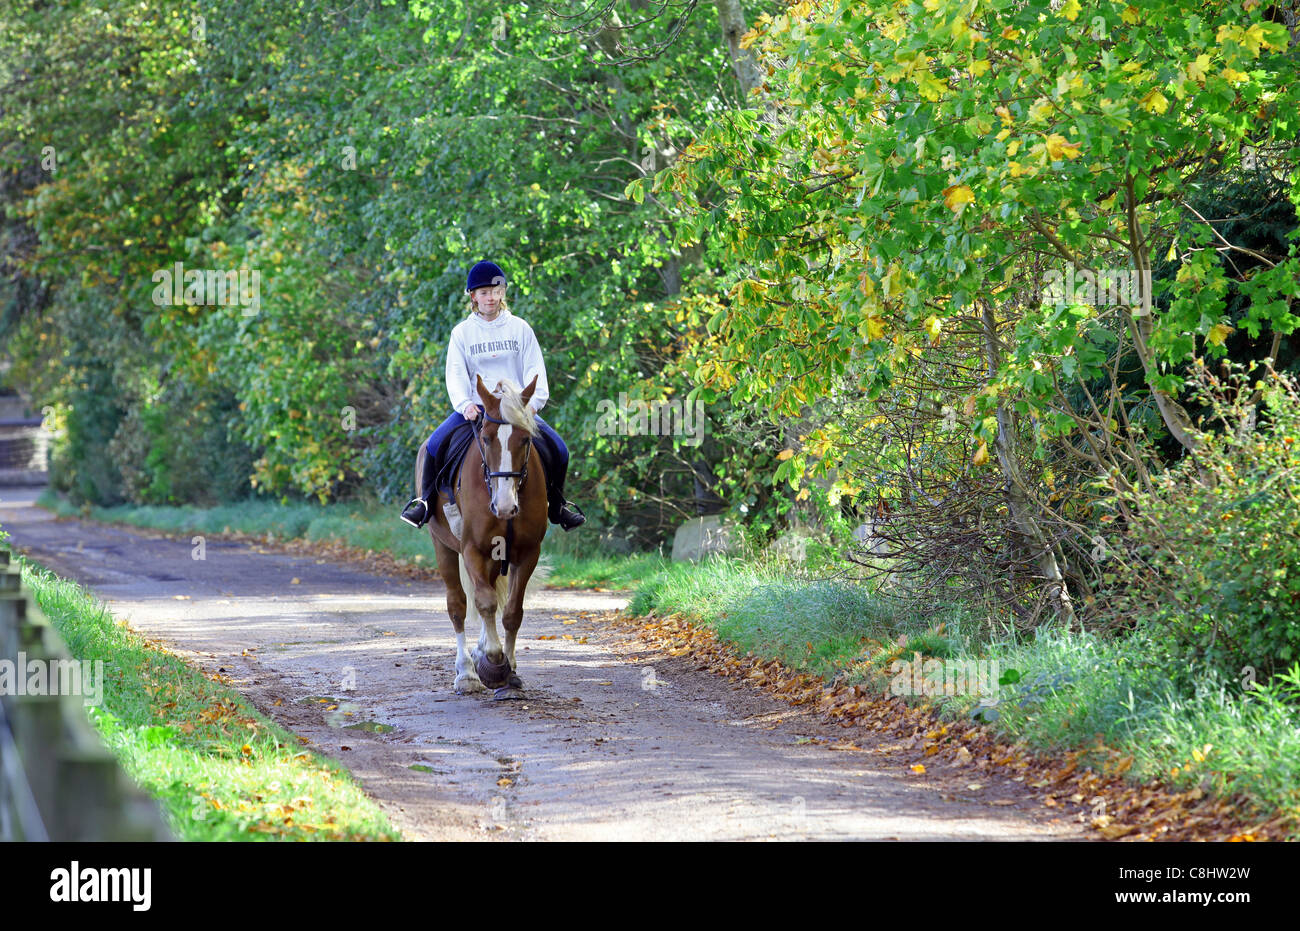 Woman riding horse dans le village de Deeside Bieldside près d'Aberdeen, Écosse, Royaume-Uni Banque D'Images